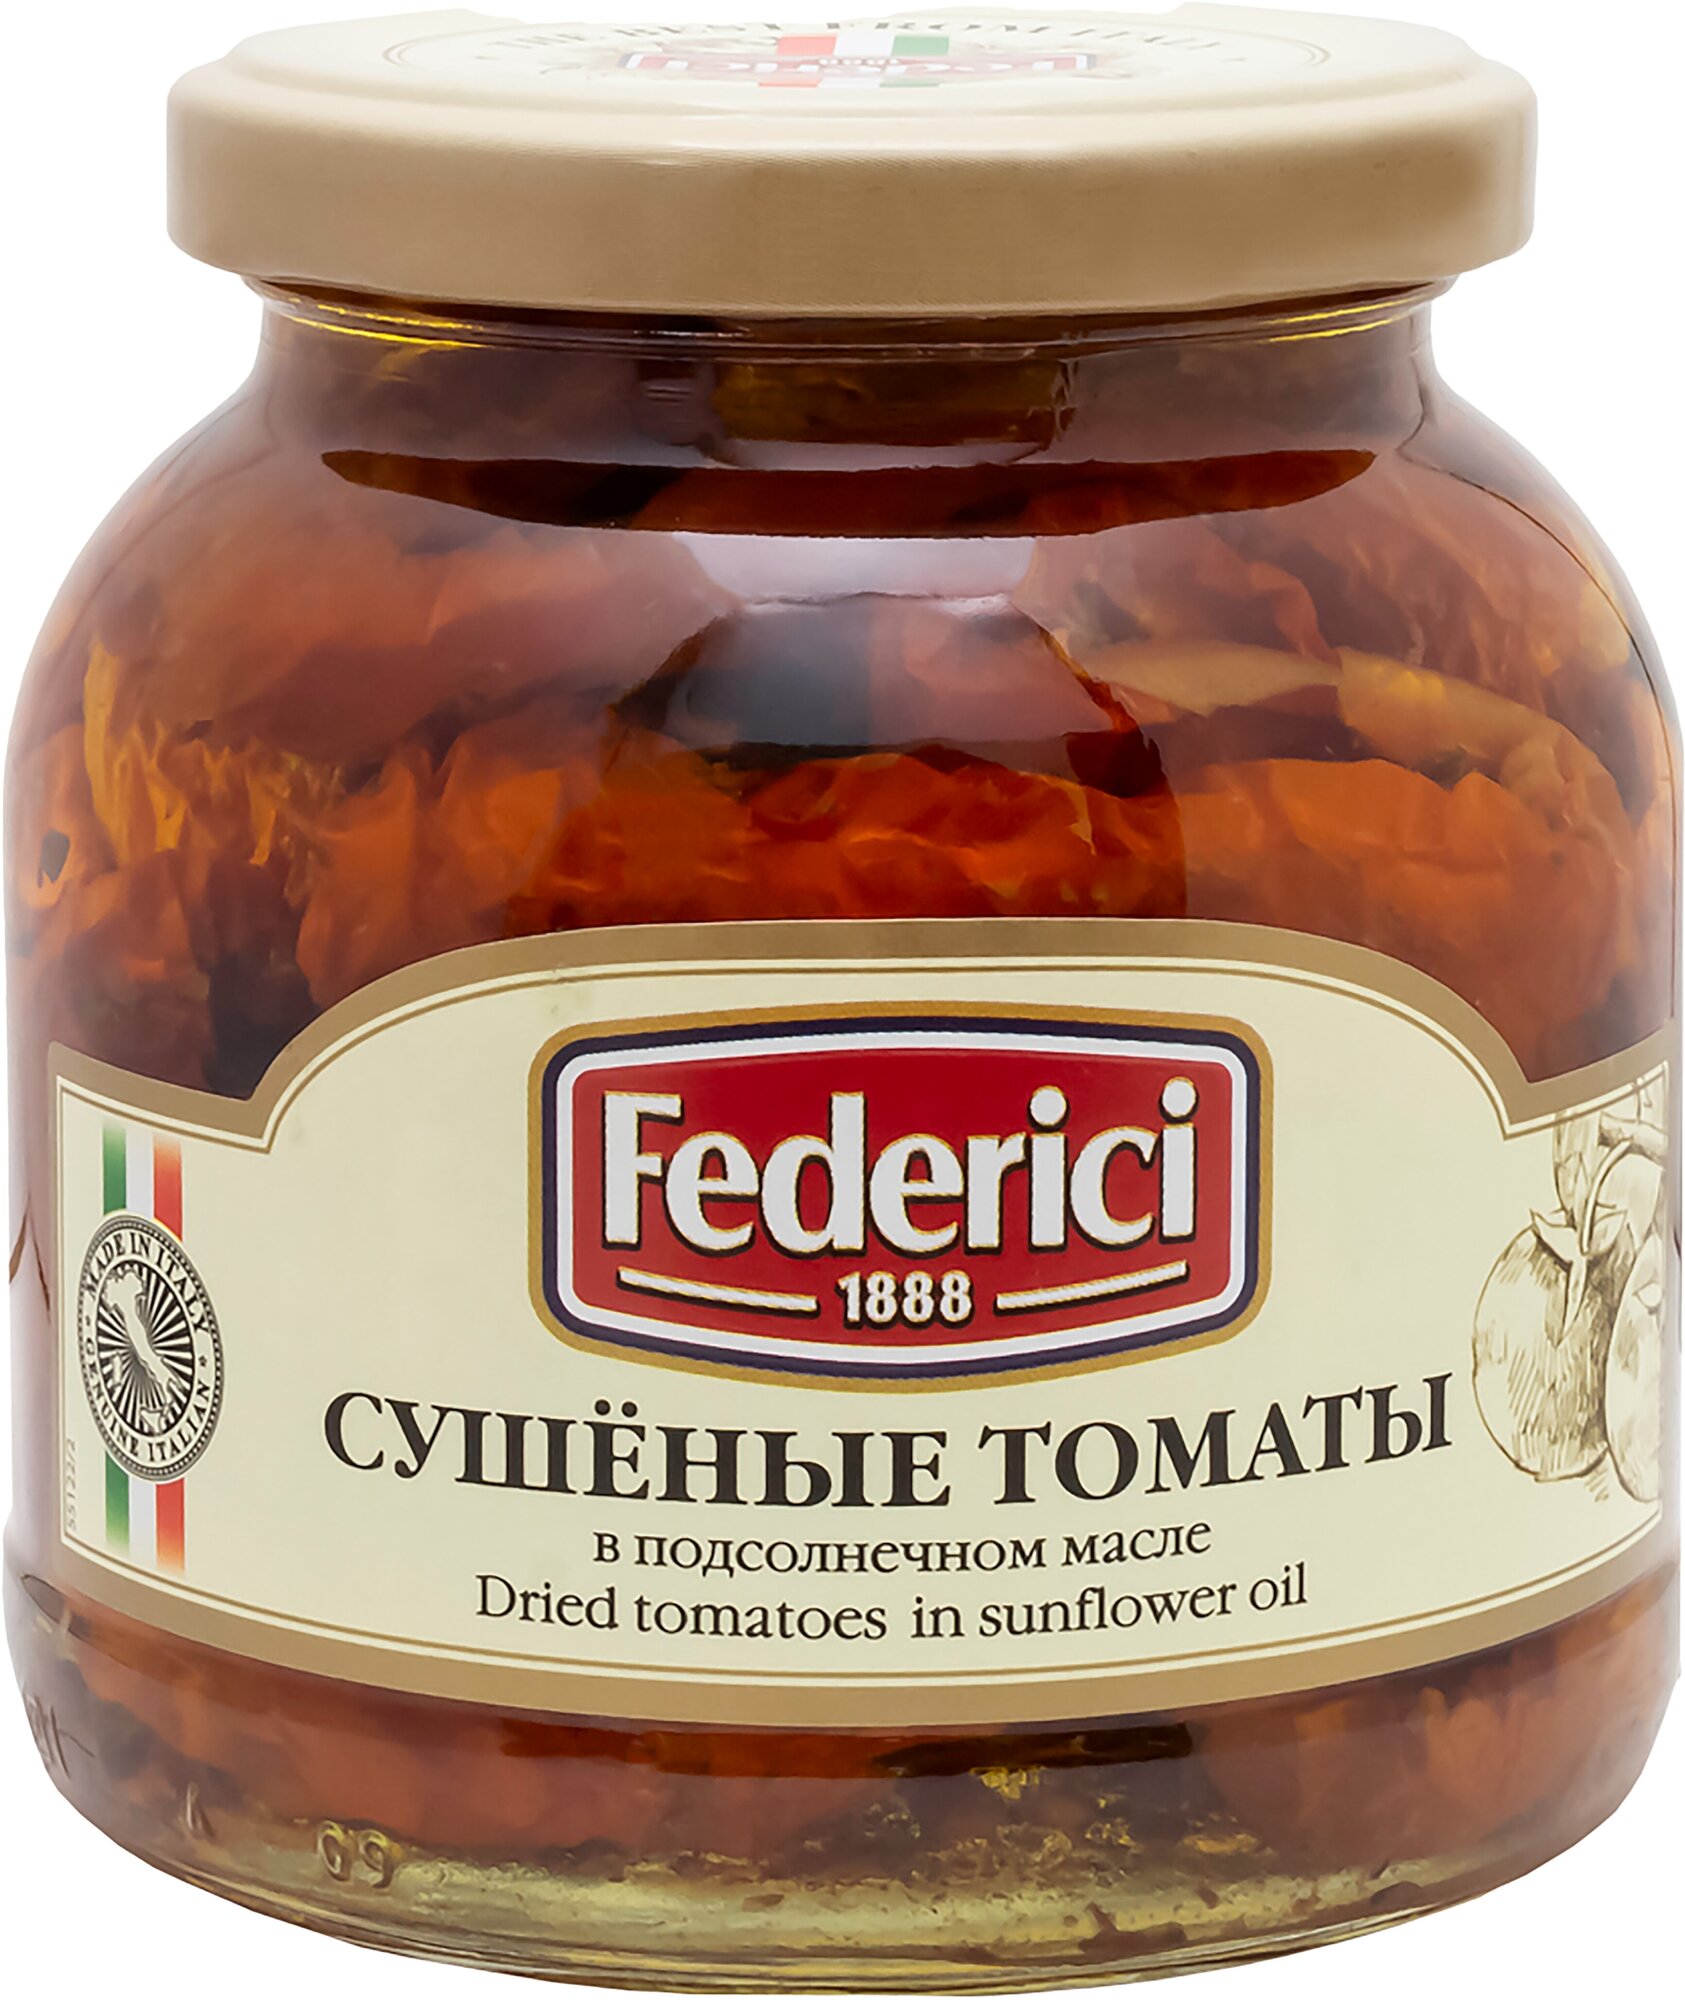 Сушеные томаты в подсолнечном масле Federici